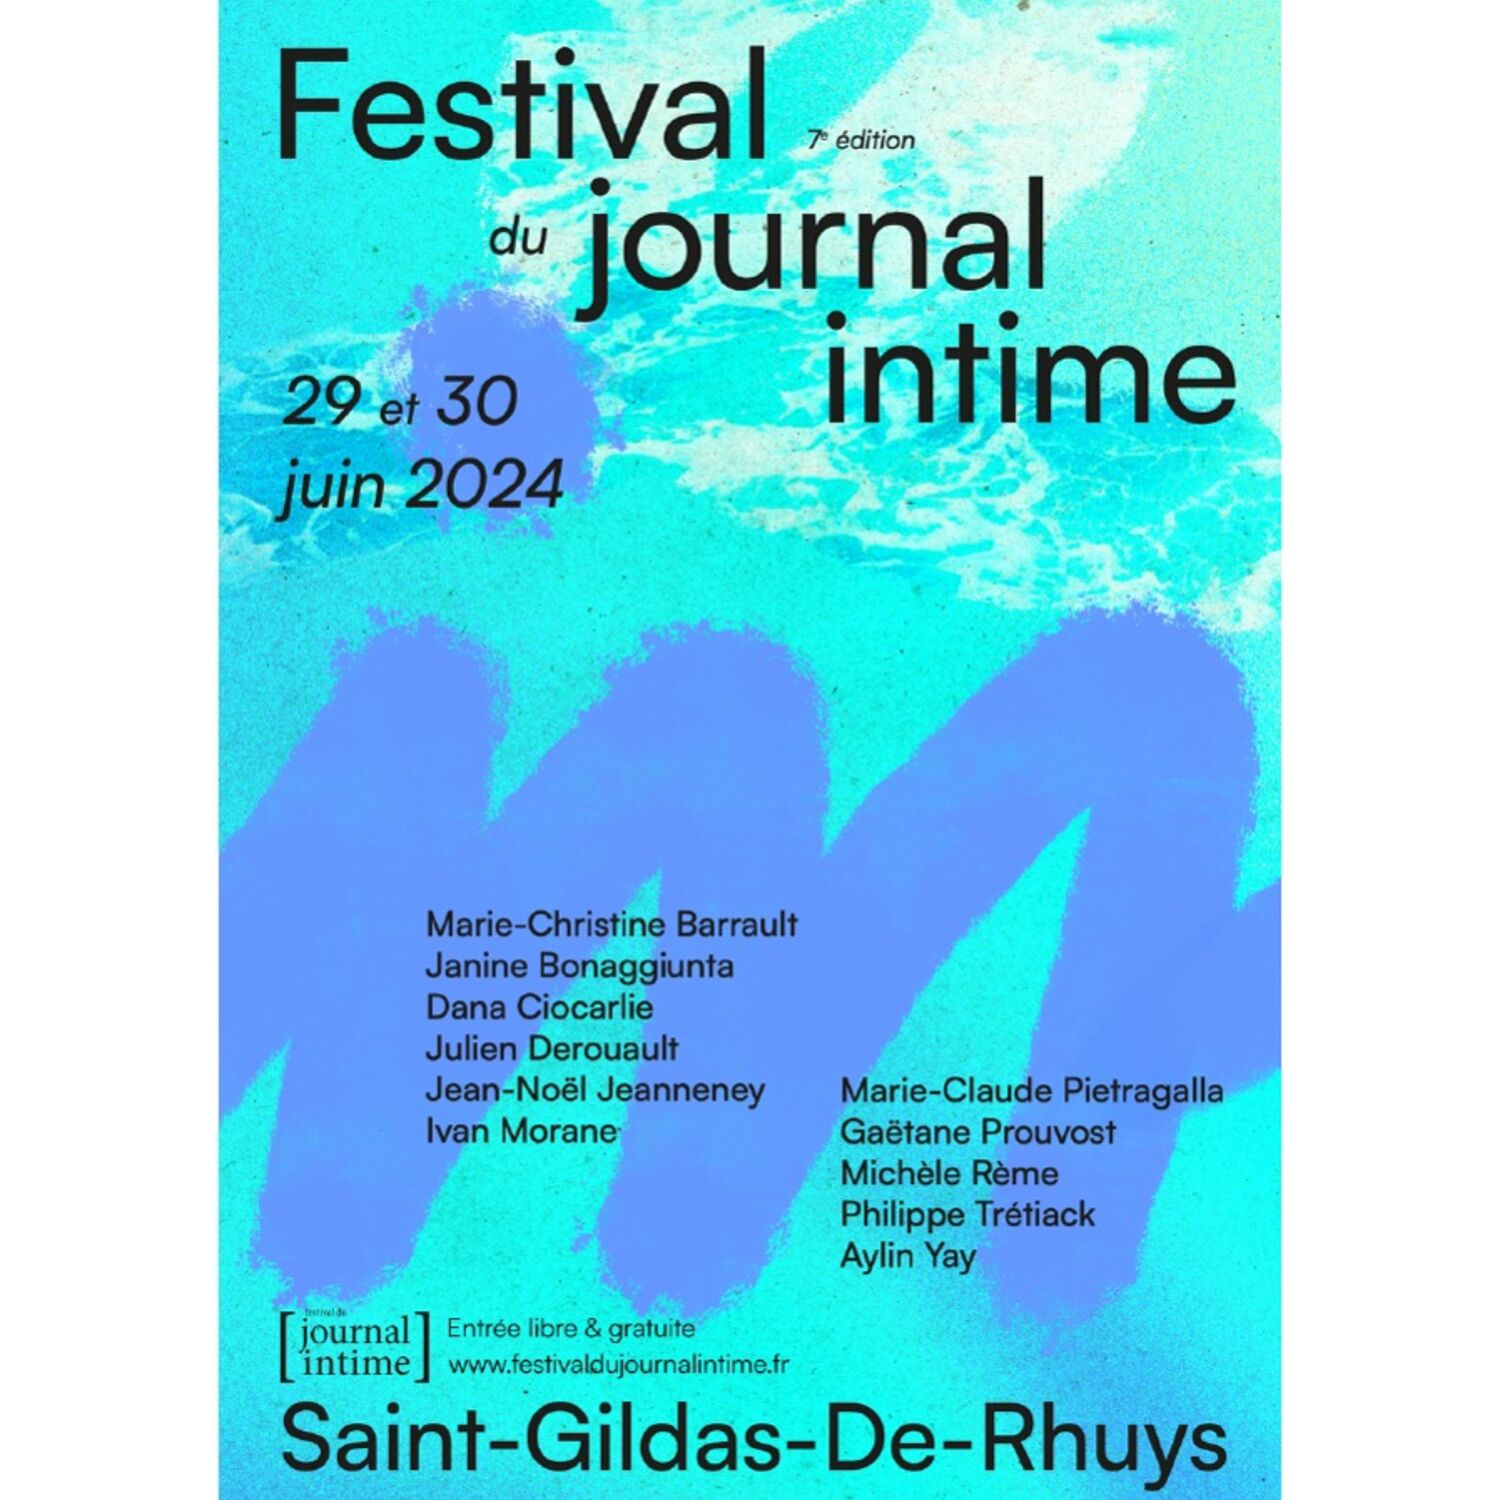 Redécouvrir le journal intime à Saint-Gildas-De-Rhuys